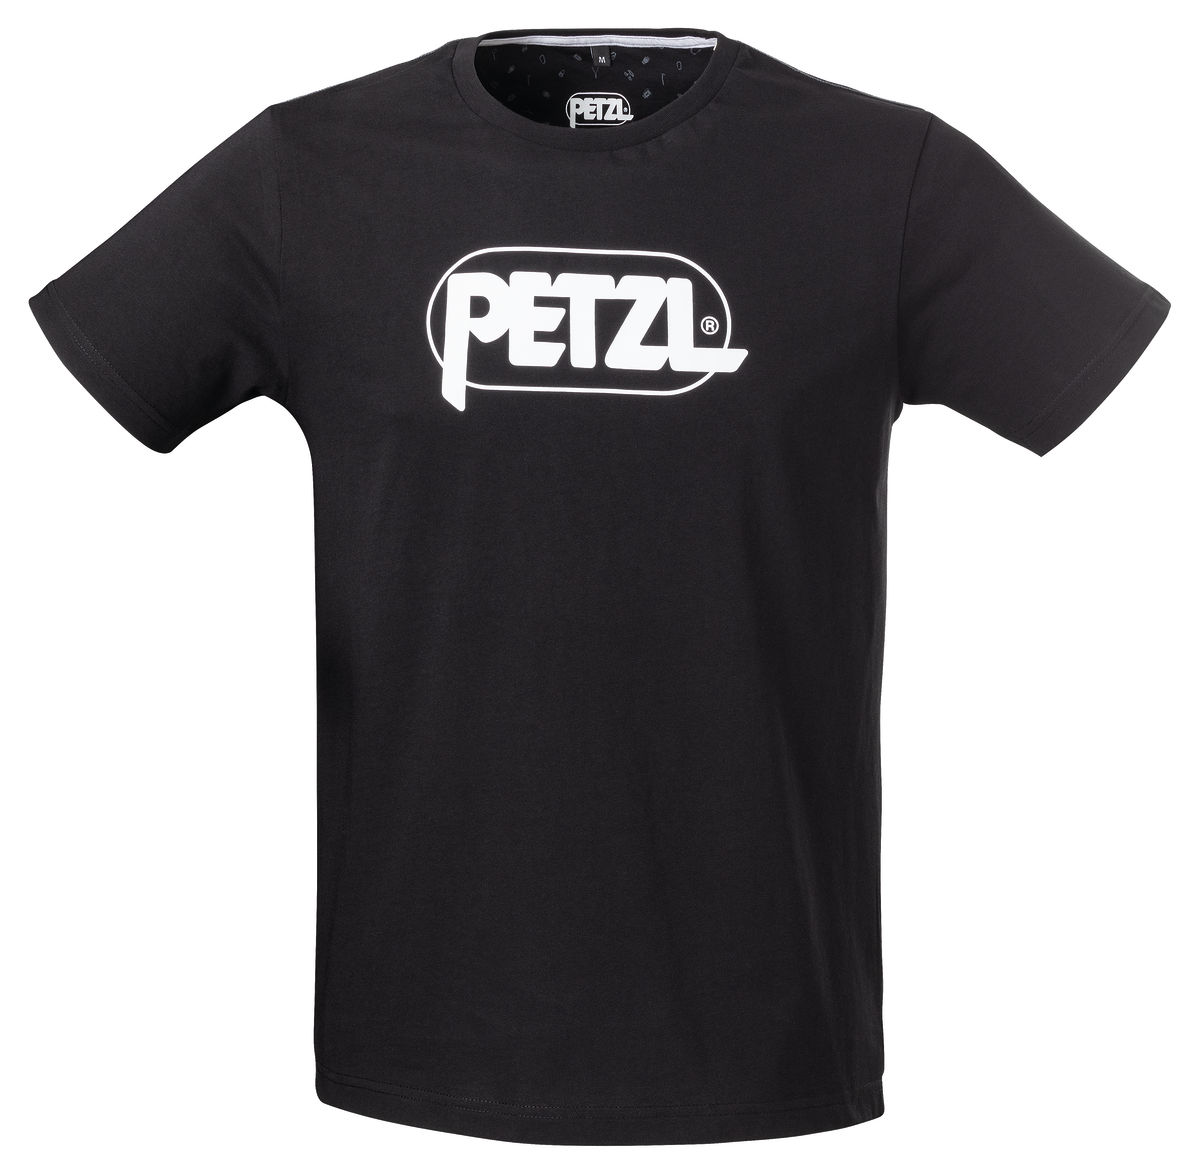 T-shirt ADAM - PETZL